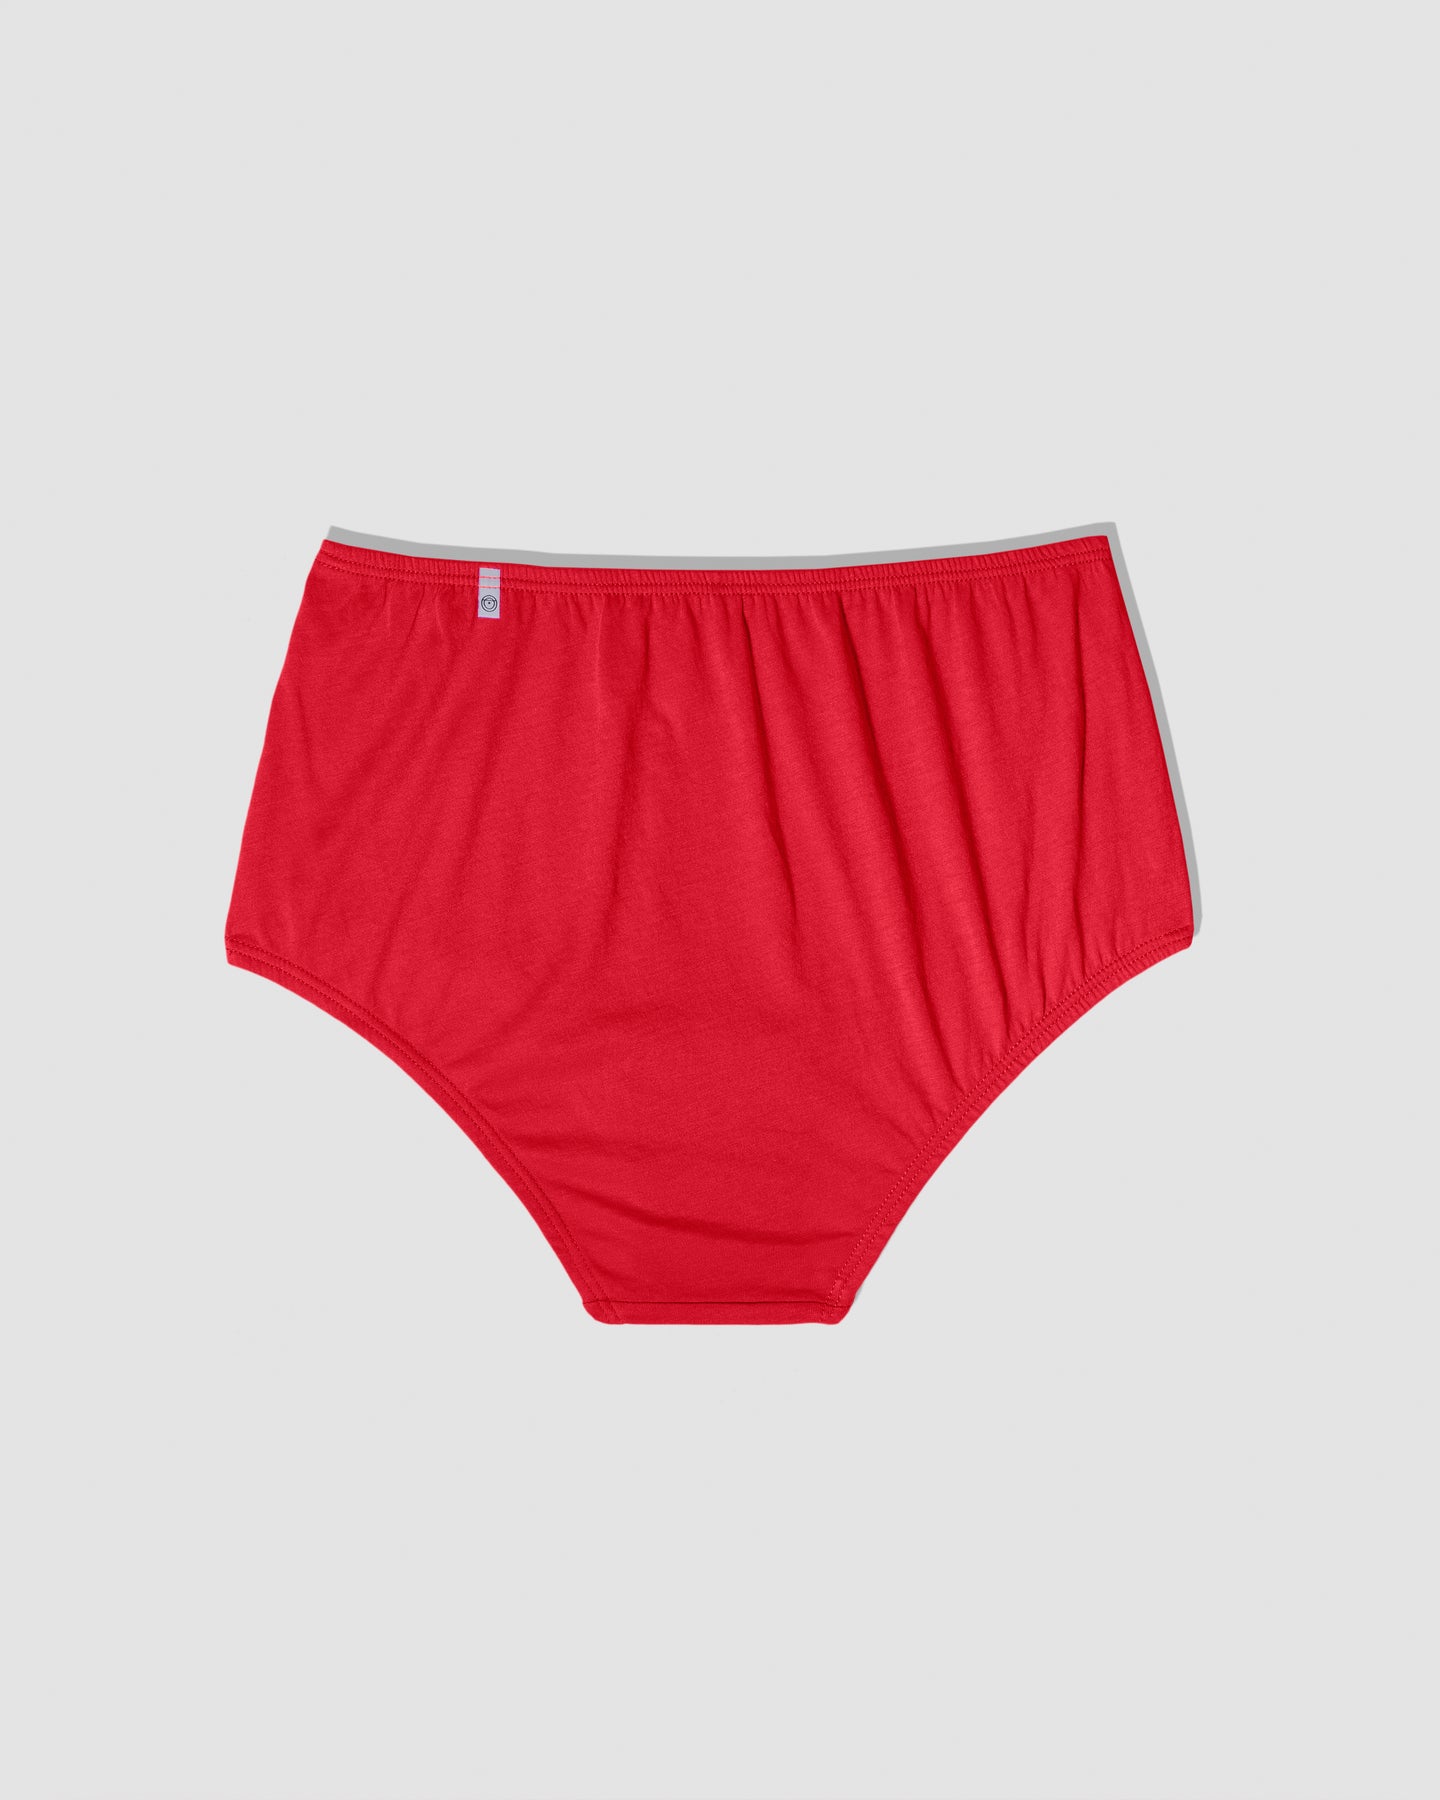 Red High Waist Underwear Women